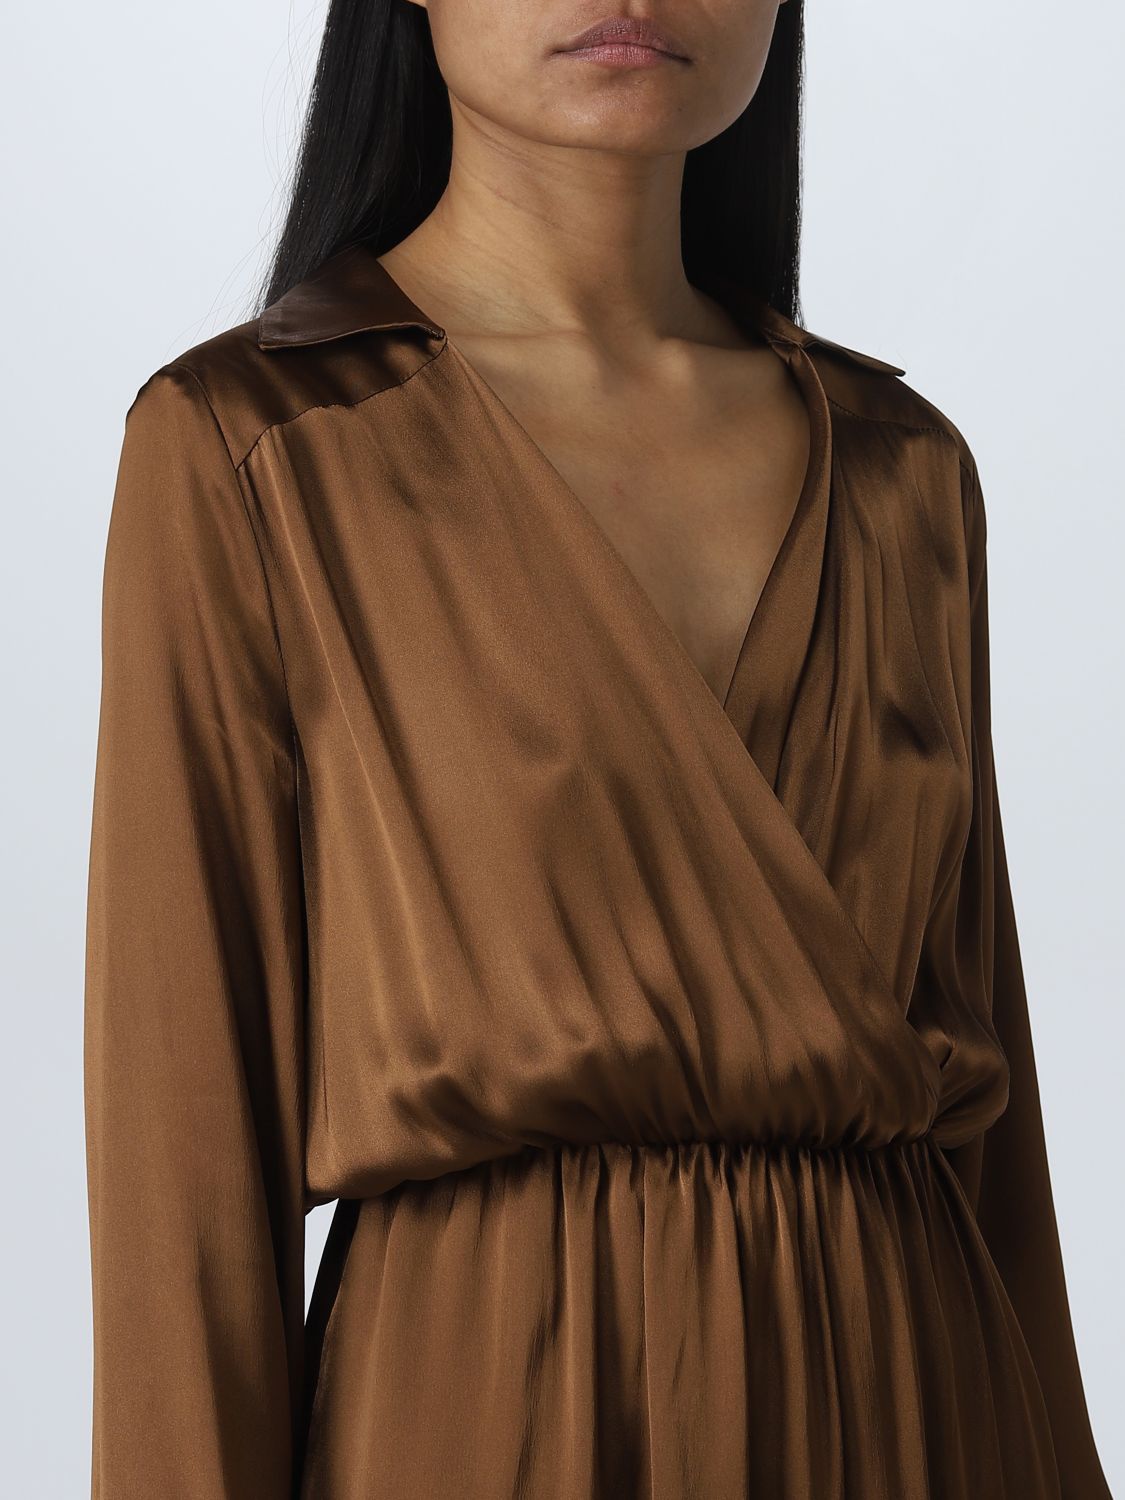 Vestido Semicouture: Vestido Semicouture para mujer marrón oscuro 3